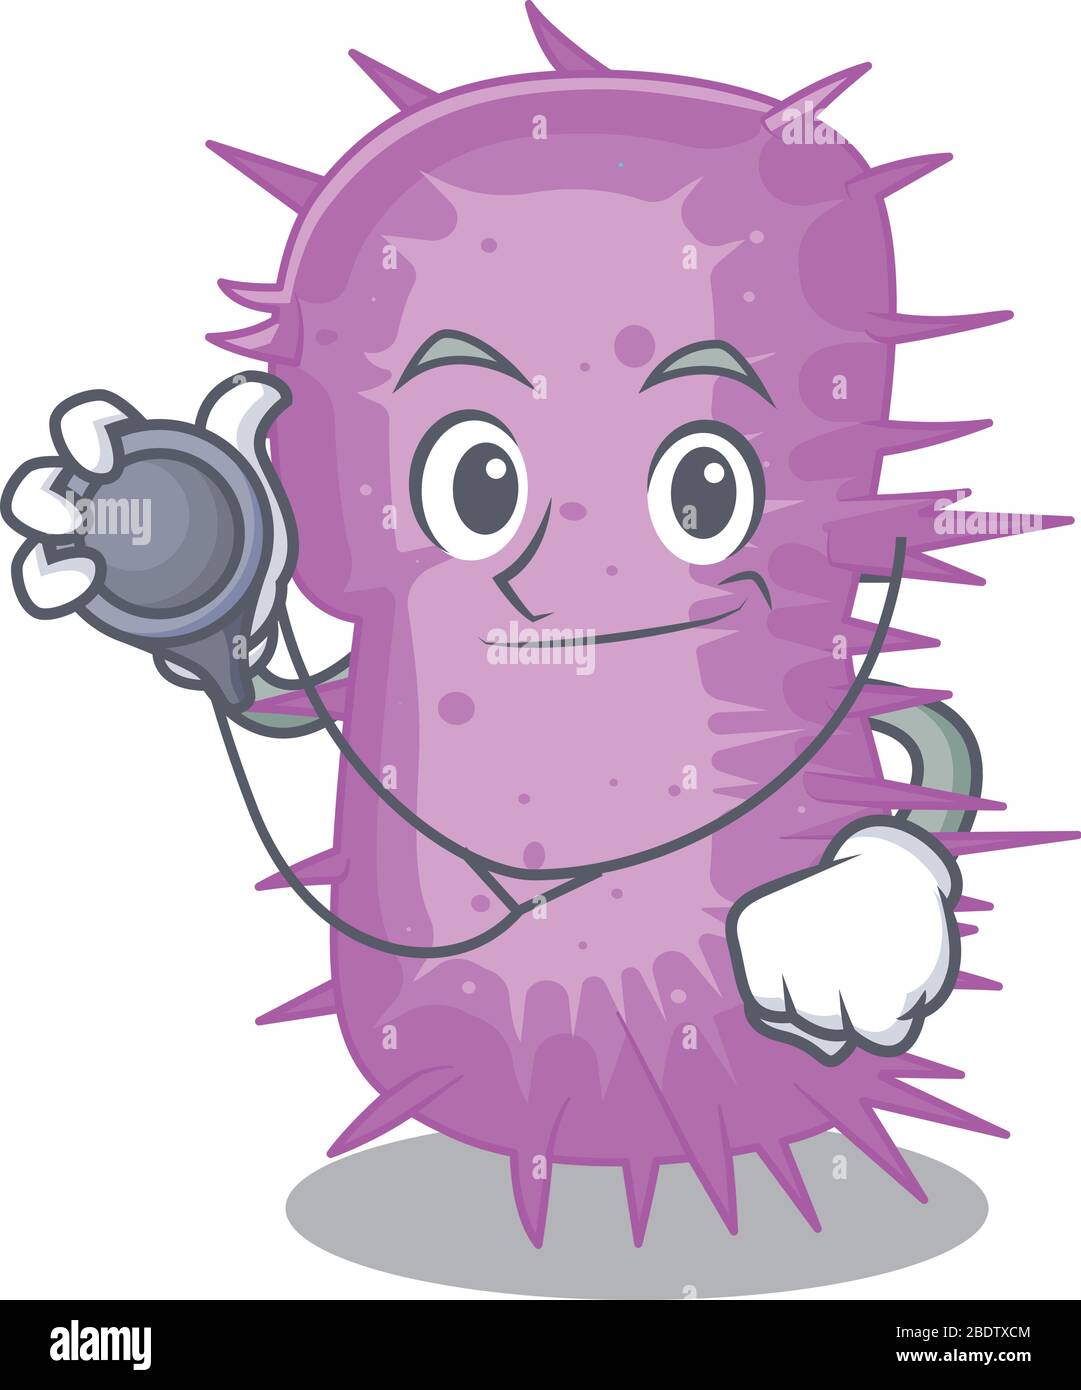 Acinetobacter baumannii in doctor cartoon character with tools Stock Vector